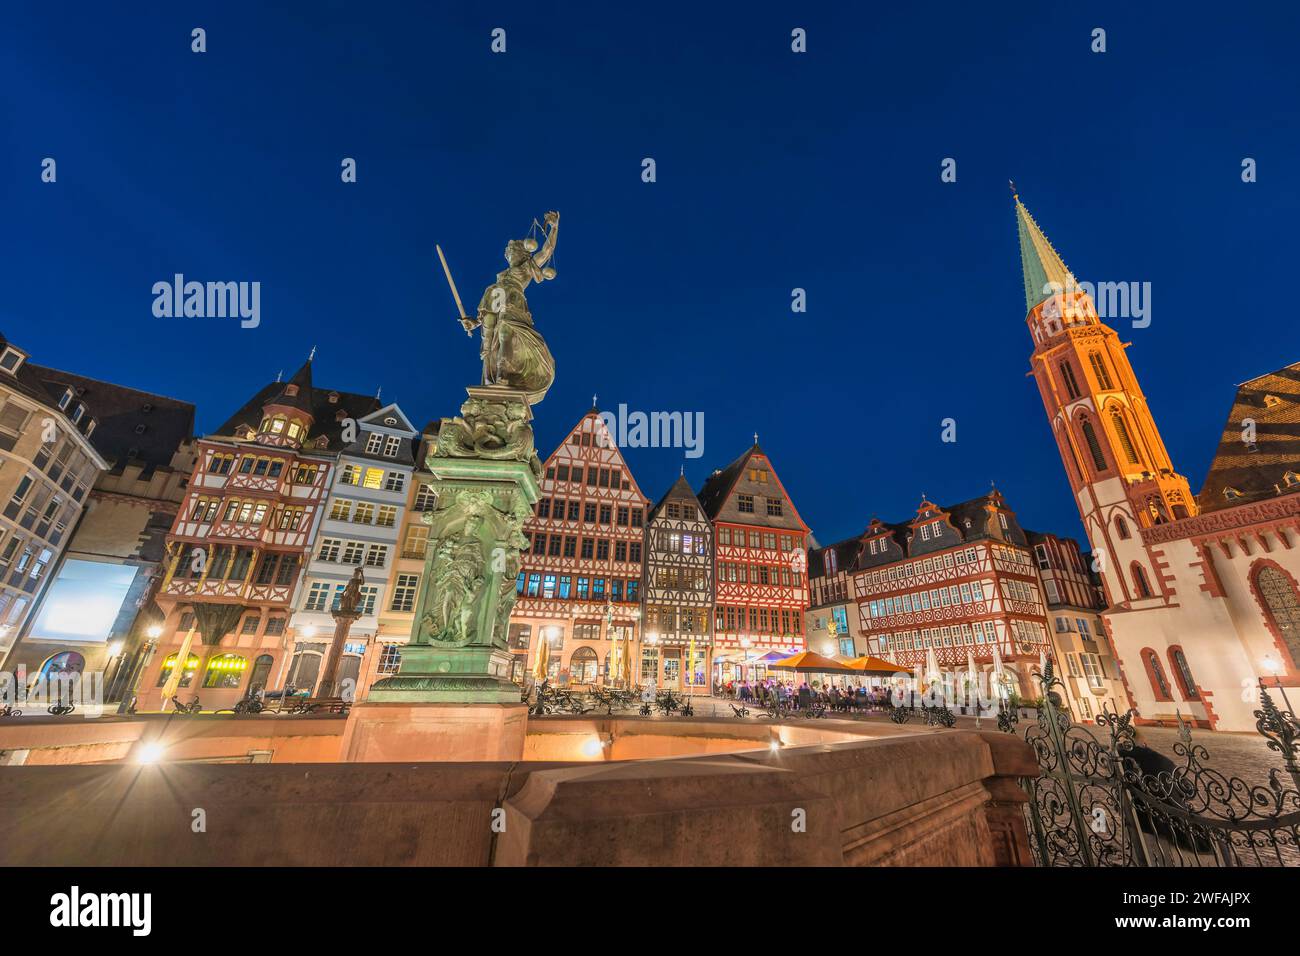 Frankfurt Deutschland, nächtliche Skyline der Stadt am Altstadtplatz Stockfoto